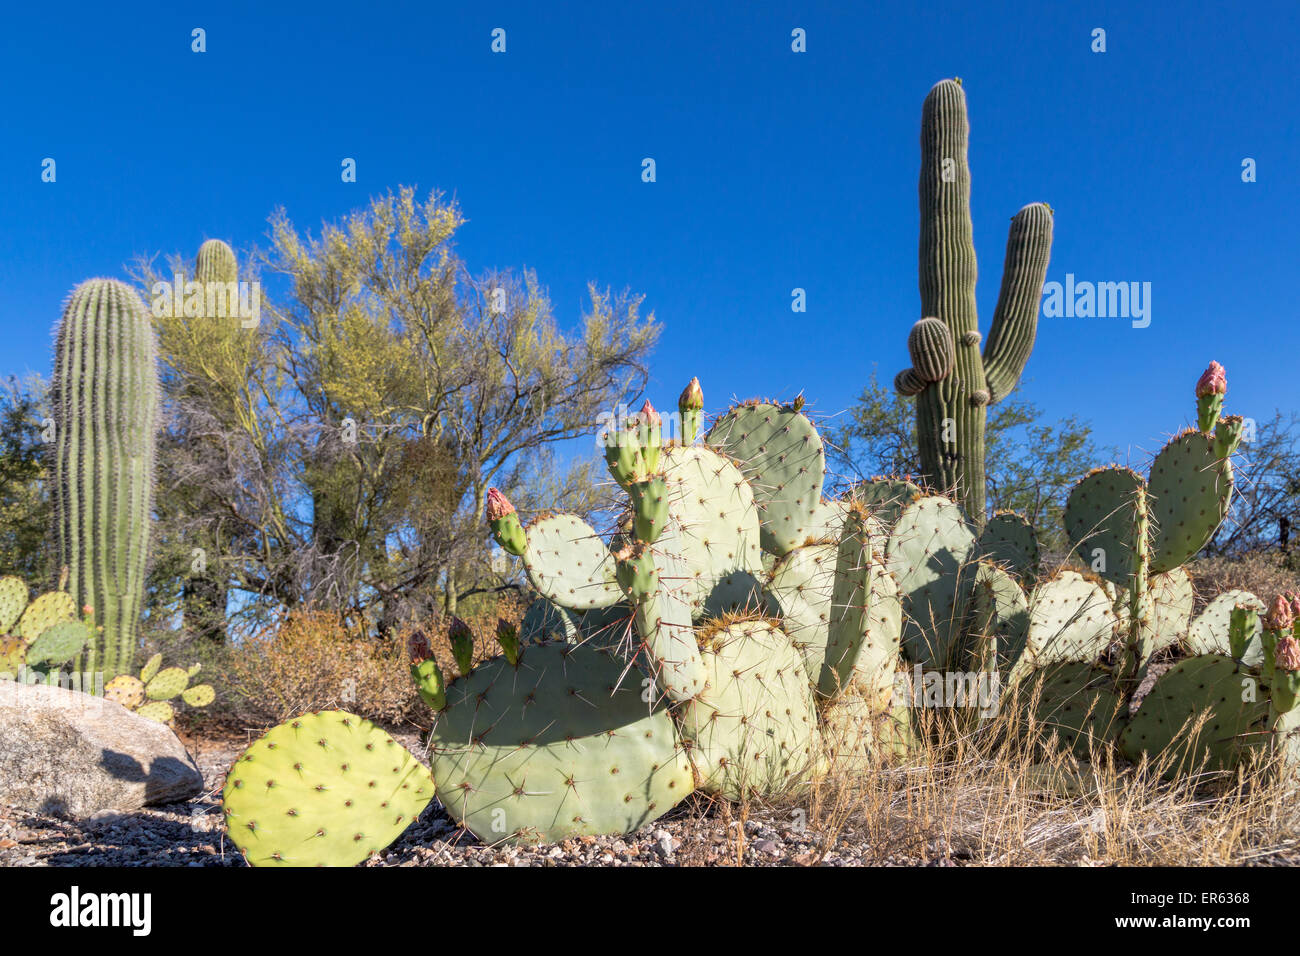 Kaktus Landschaft mit Saguaro Kakteen (Carnegiea gigantea) und der Engelmann Feigenkakteen (Opuntia Engelmannii) Stockfoto